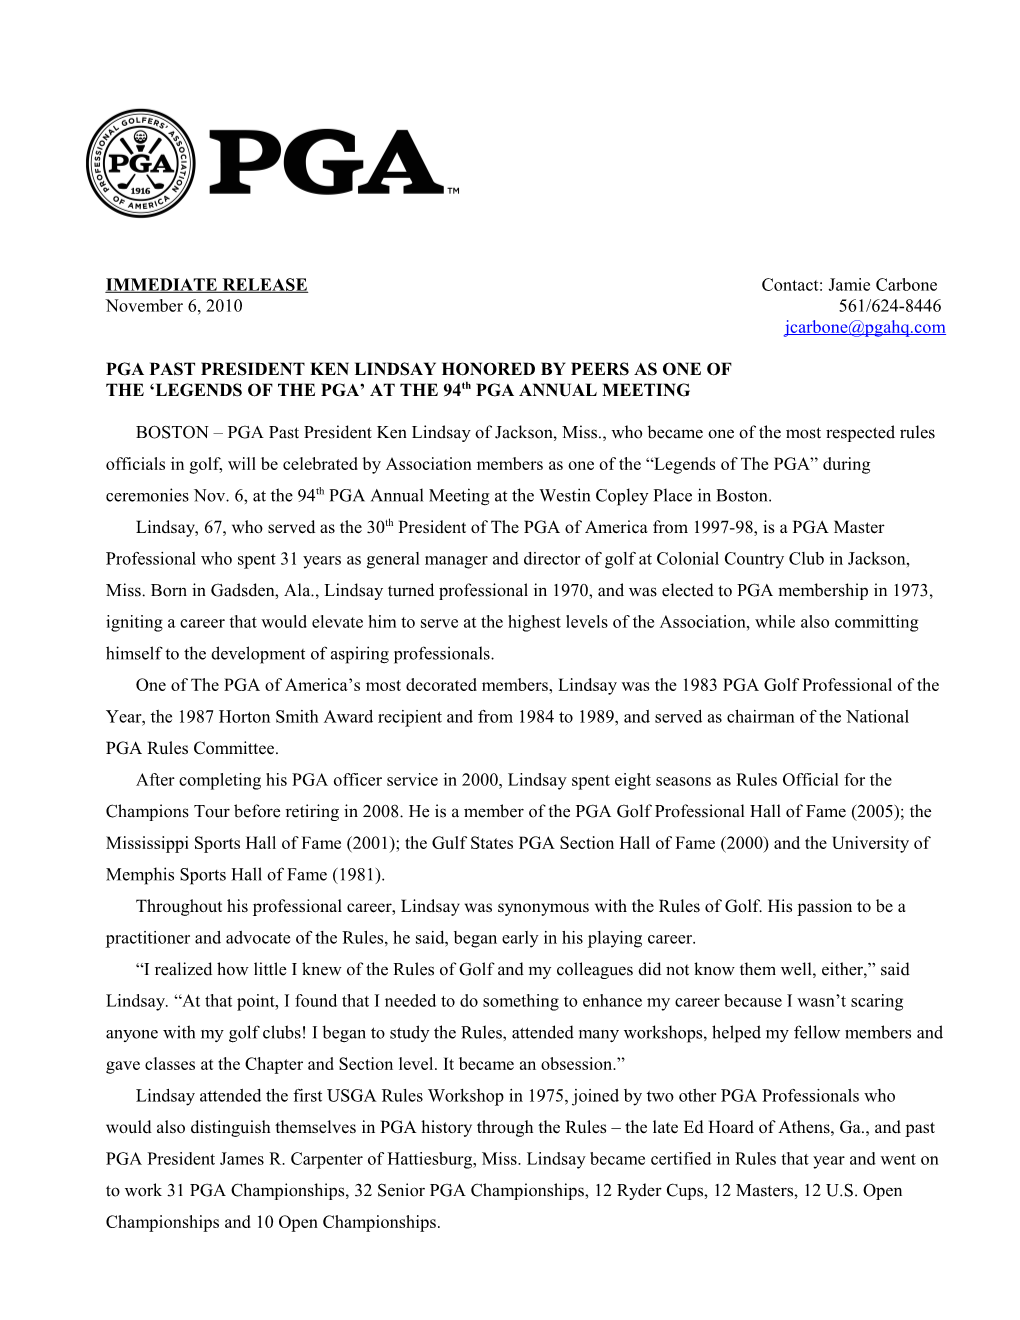 Pga Past President Ken Lindsay Honored by Peers As One Of